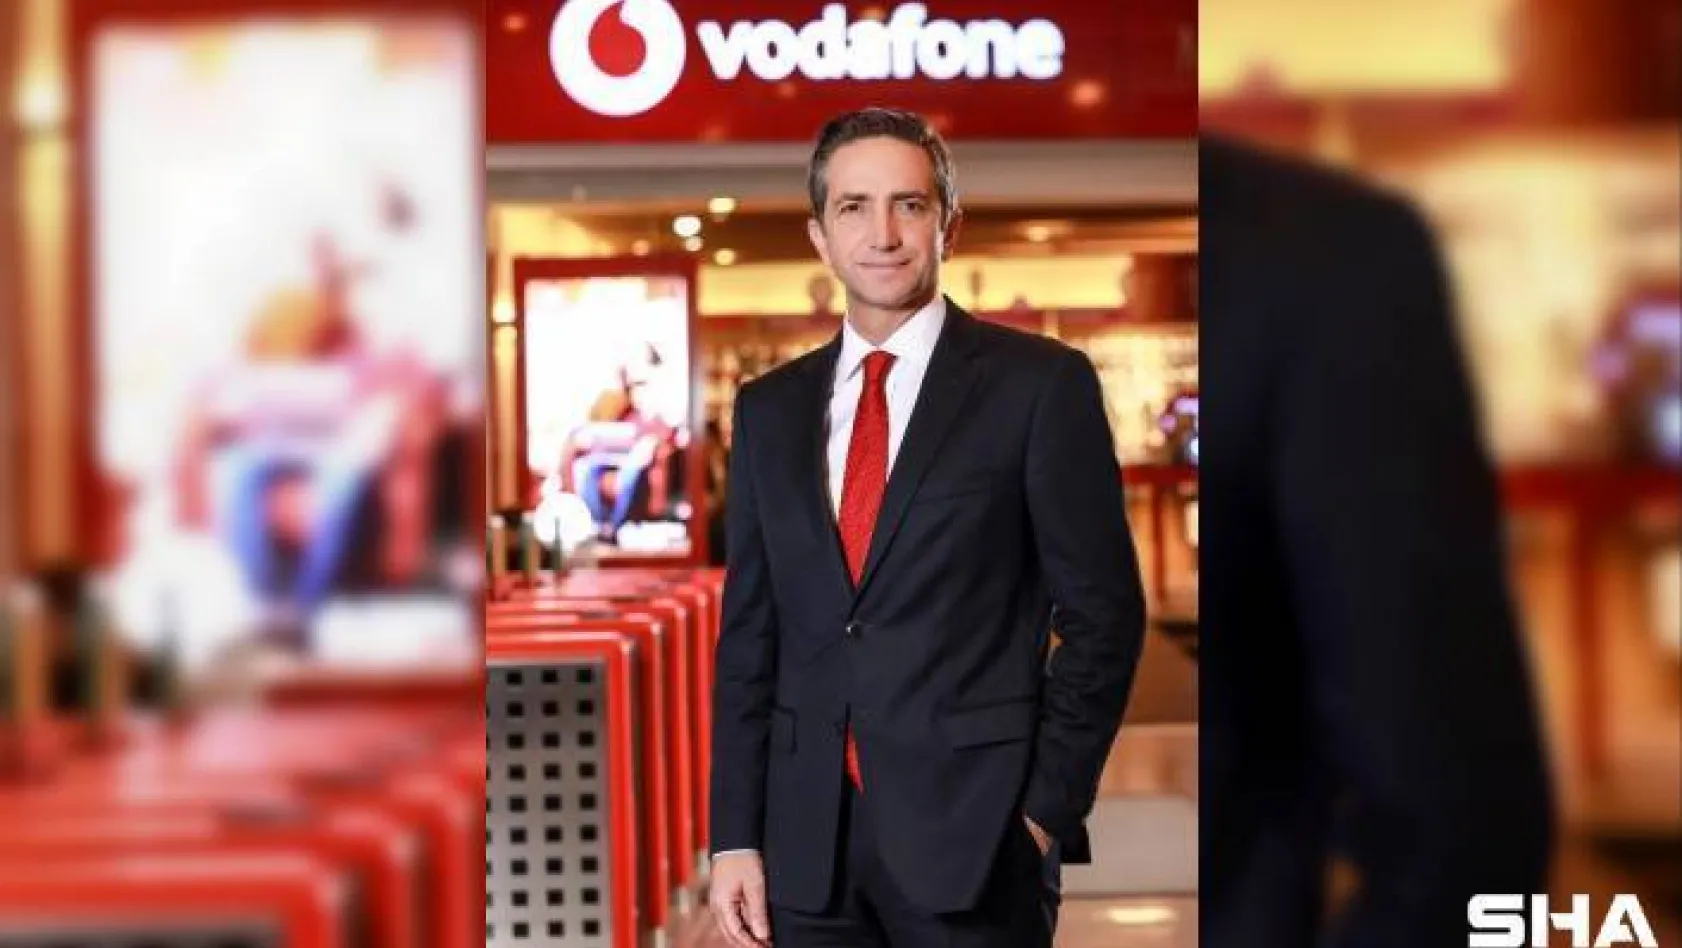 Vodafone Türkiye servis gelirlerini yüzde 17,7 artırdı